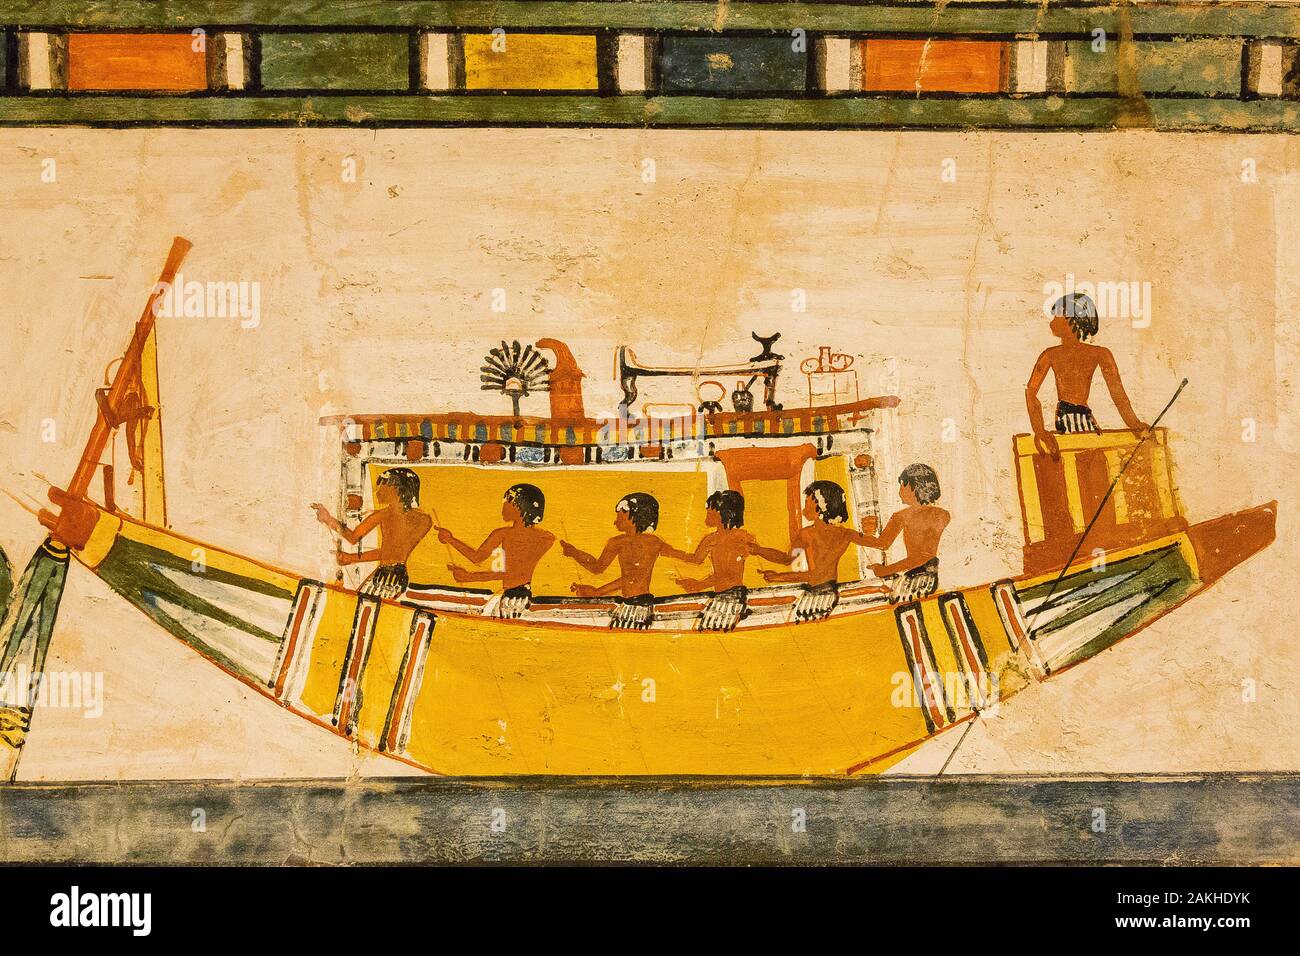 Luxor en Egypte, Vallée des Nobles, tombe de Menna. Le bateau funéraire traverse le Nil. Parmi les objets, un lit, un ventilateur et un miroir. Banque D'Images